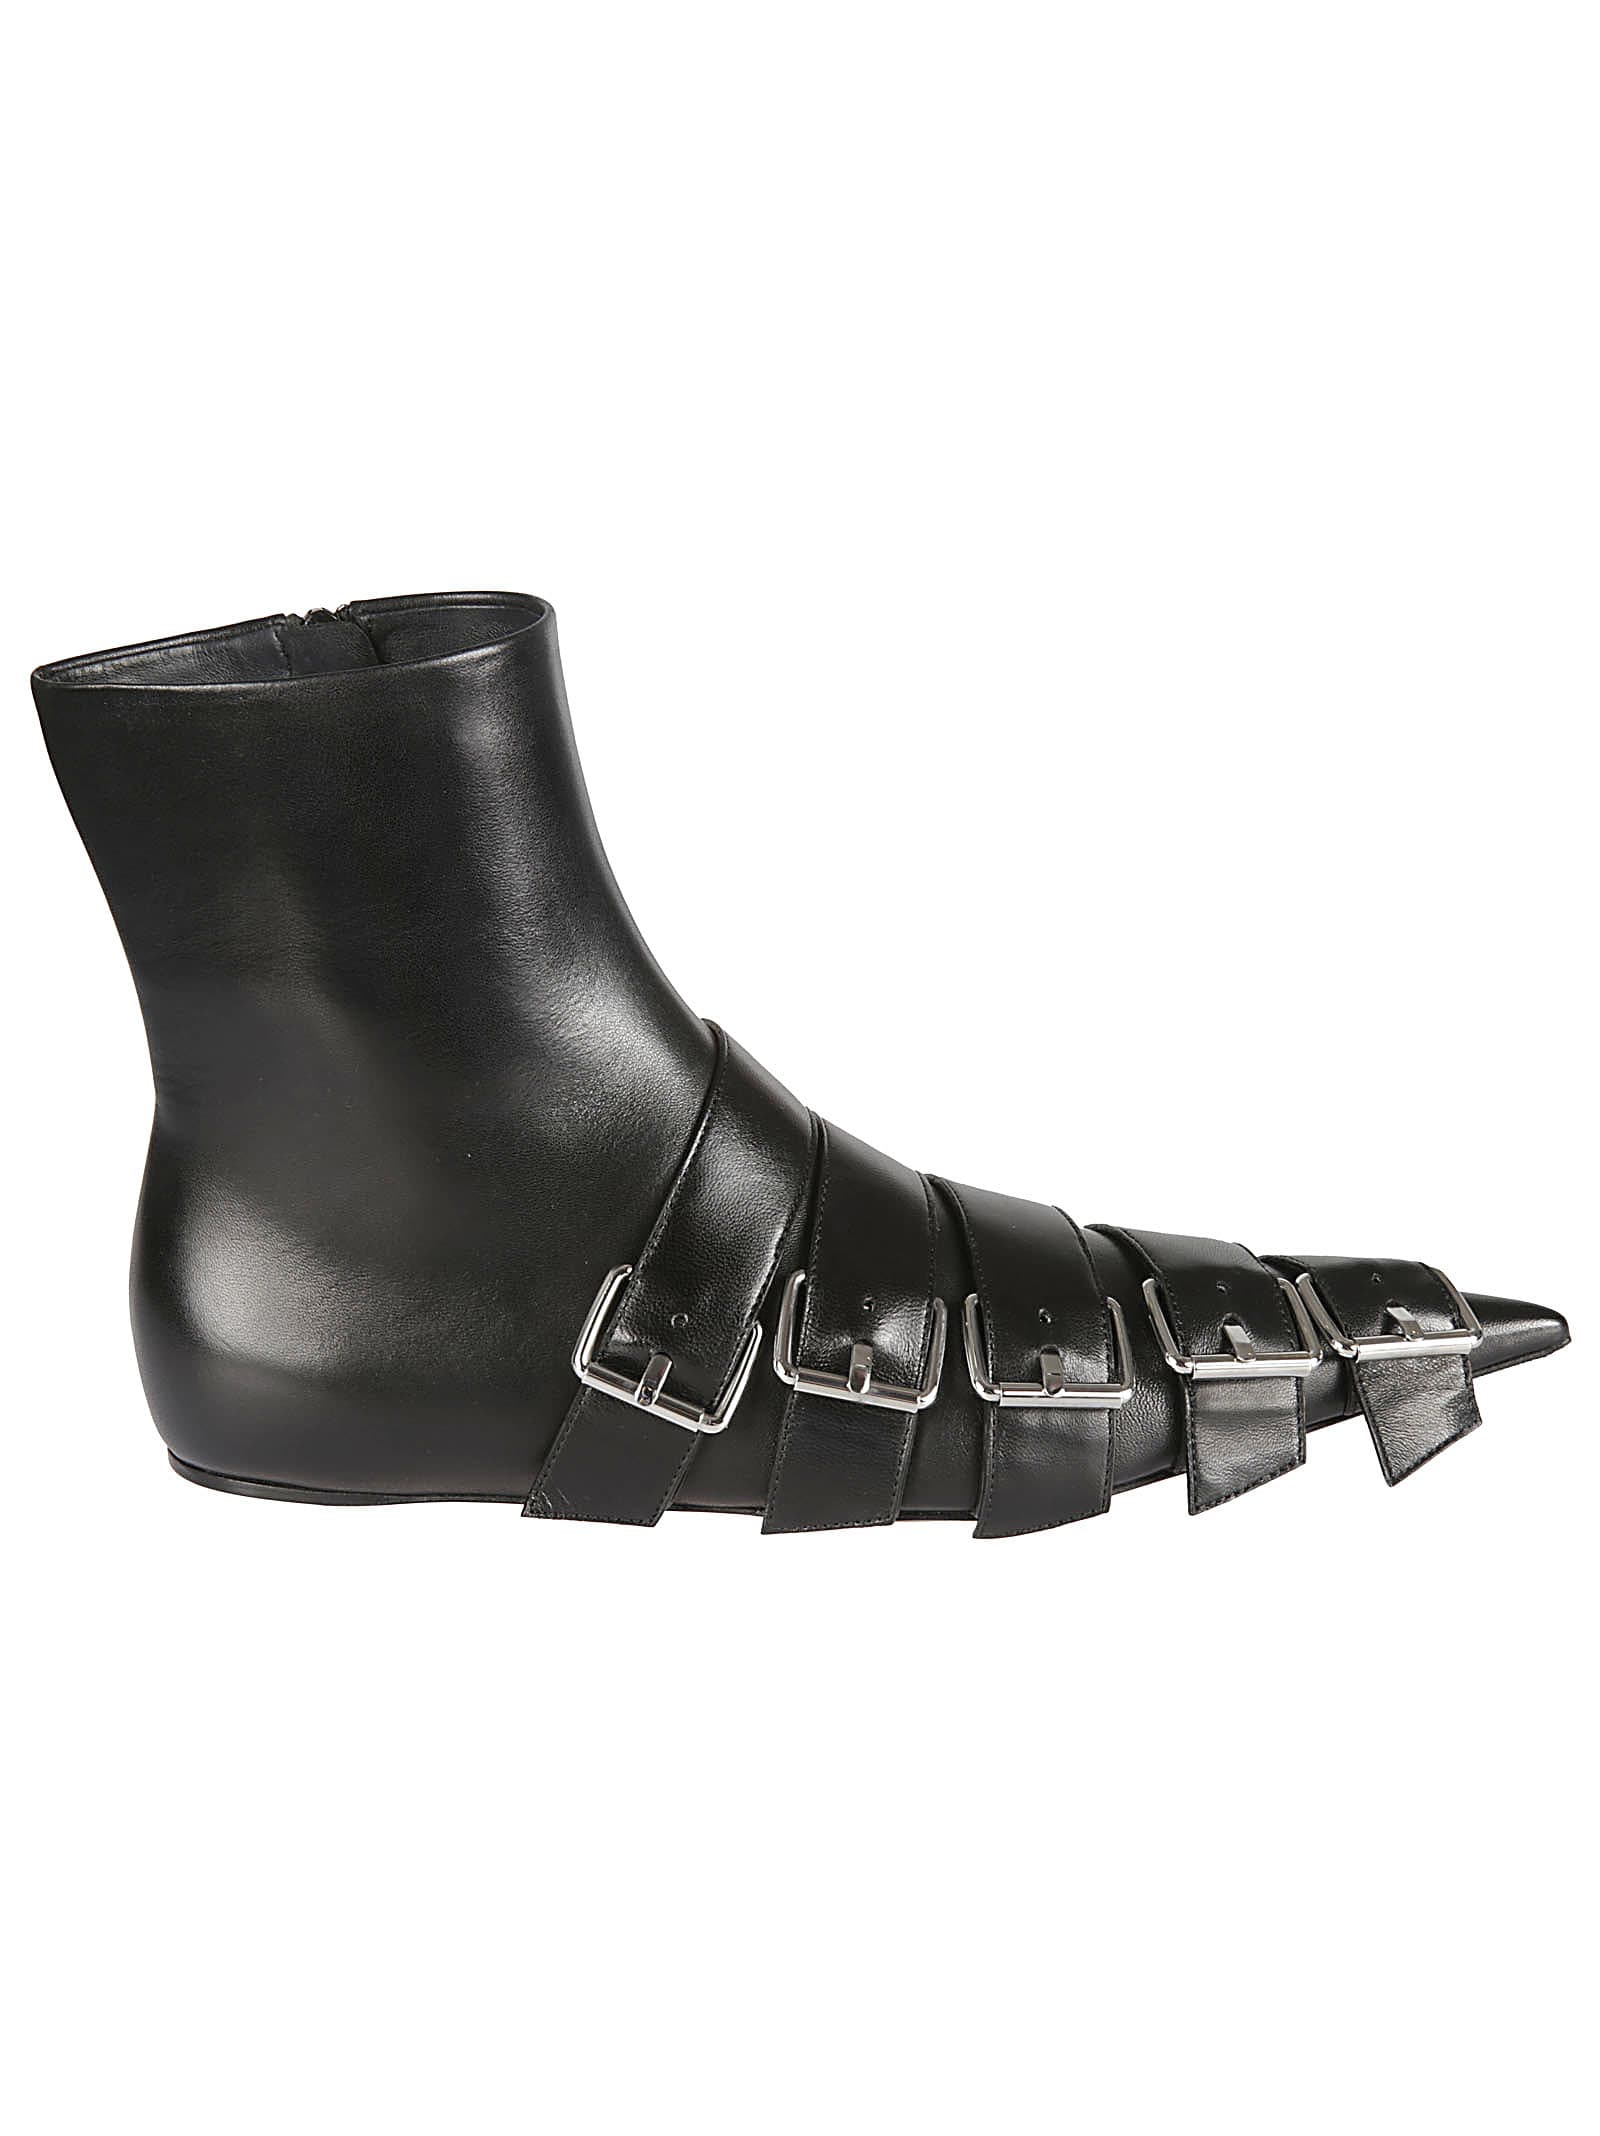 Buy Balenciaga Buckle Boots online, shop Balenciaga shoes with free shipping